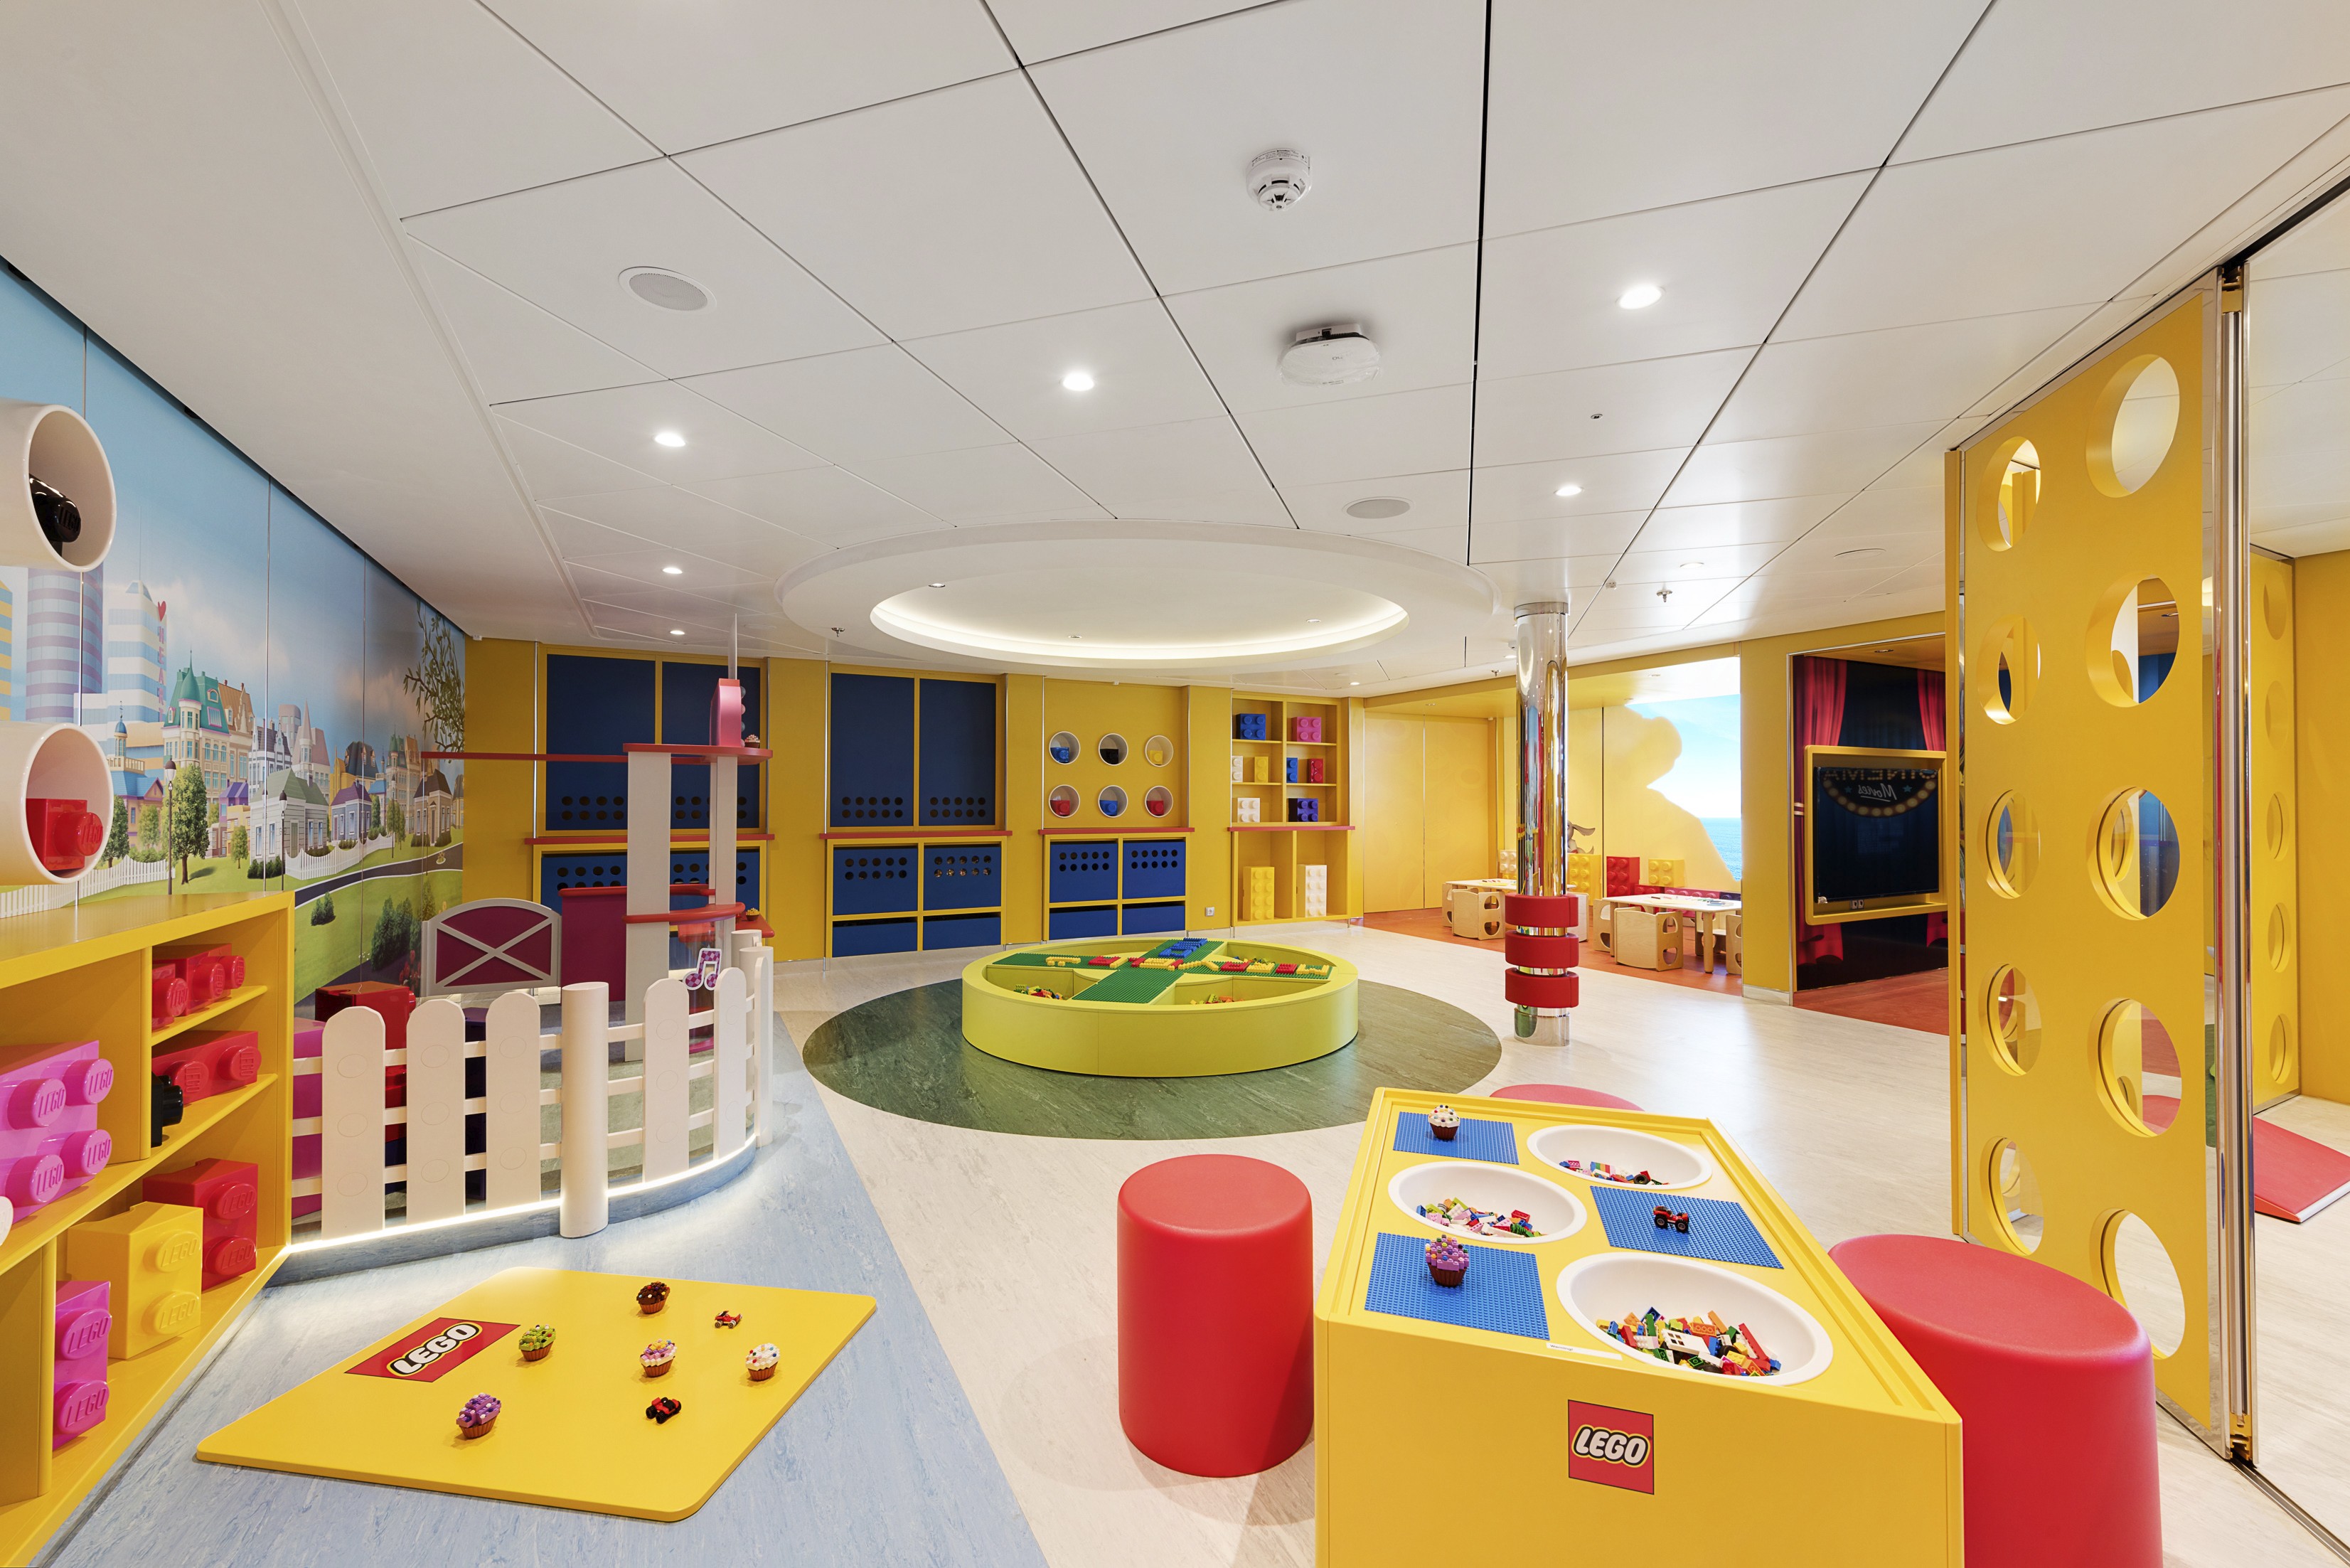 Outra área, desenvolvida em parceria com Lego (Foto: Divulgação)